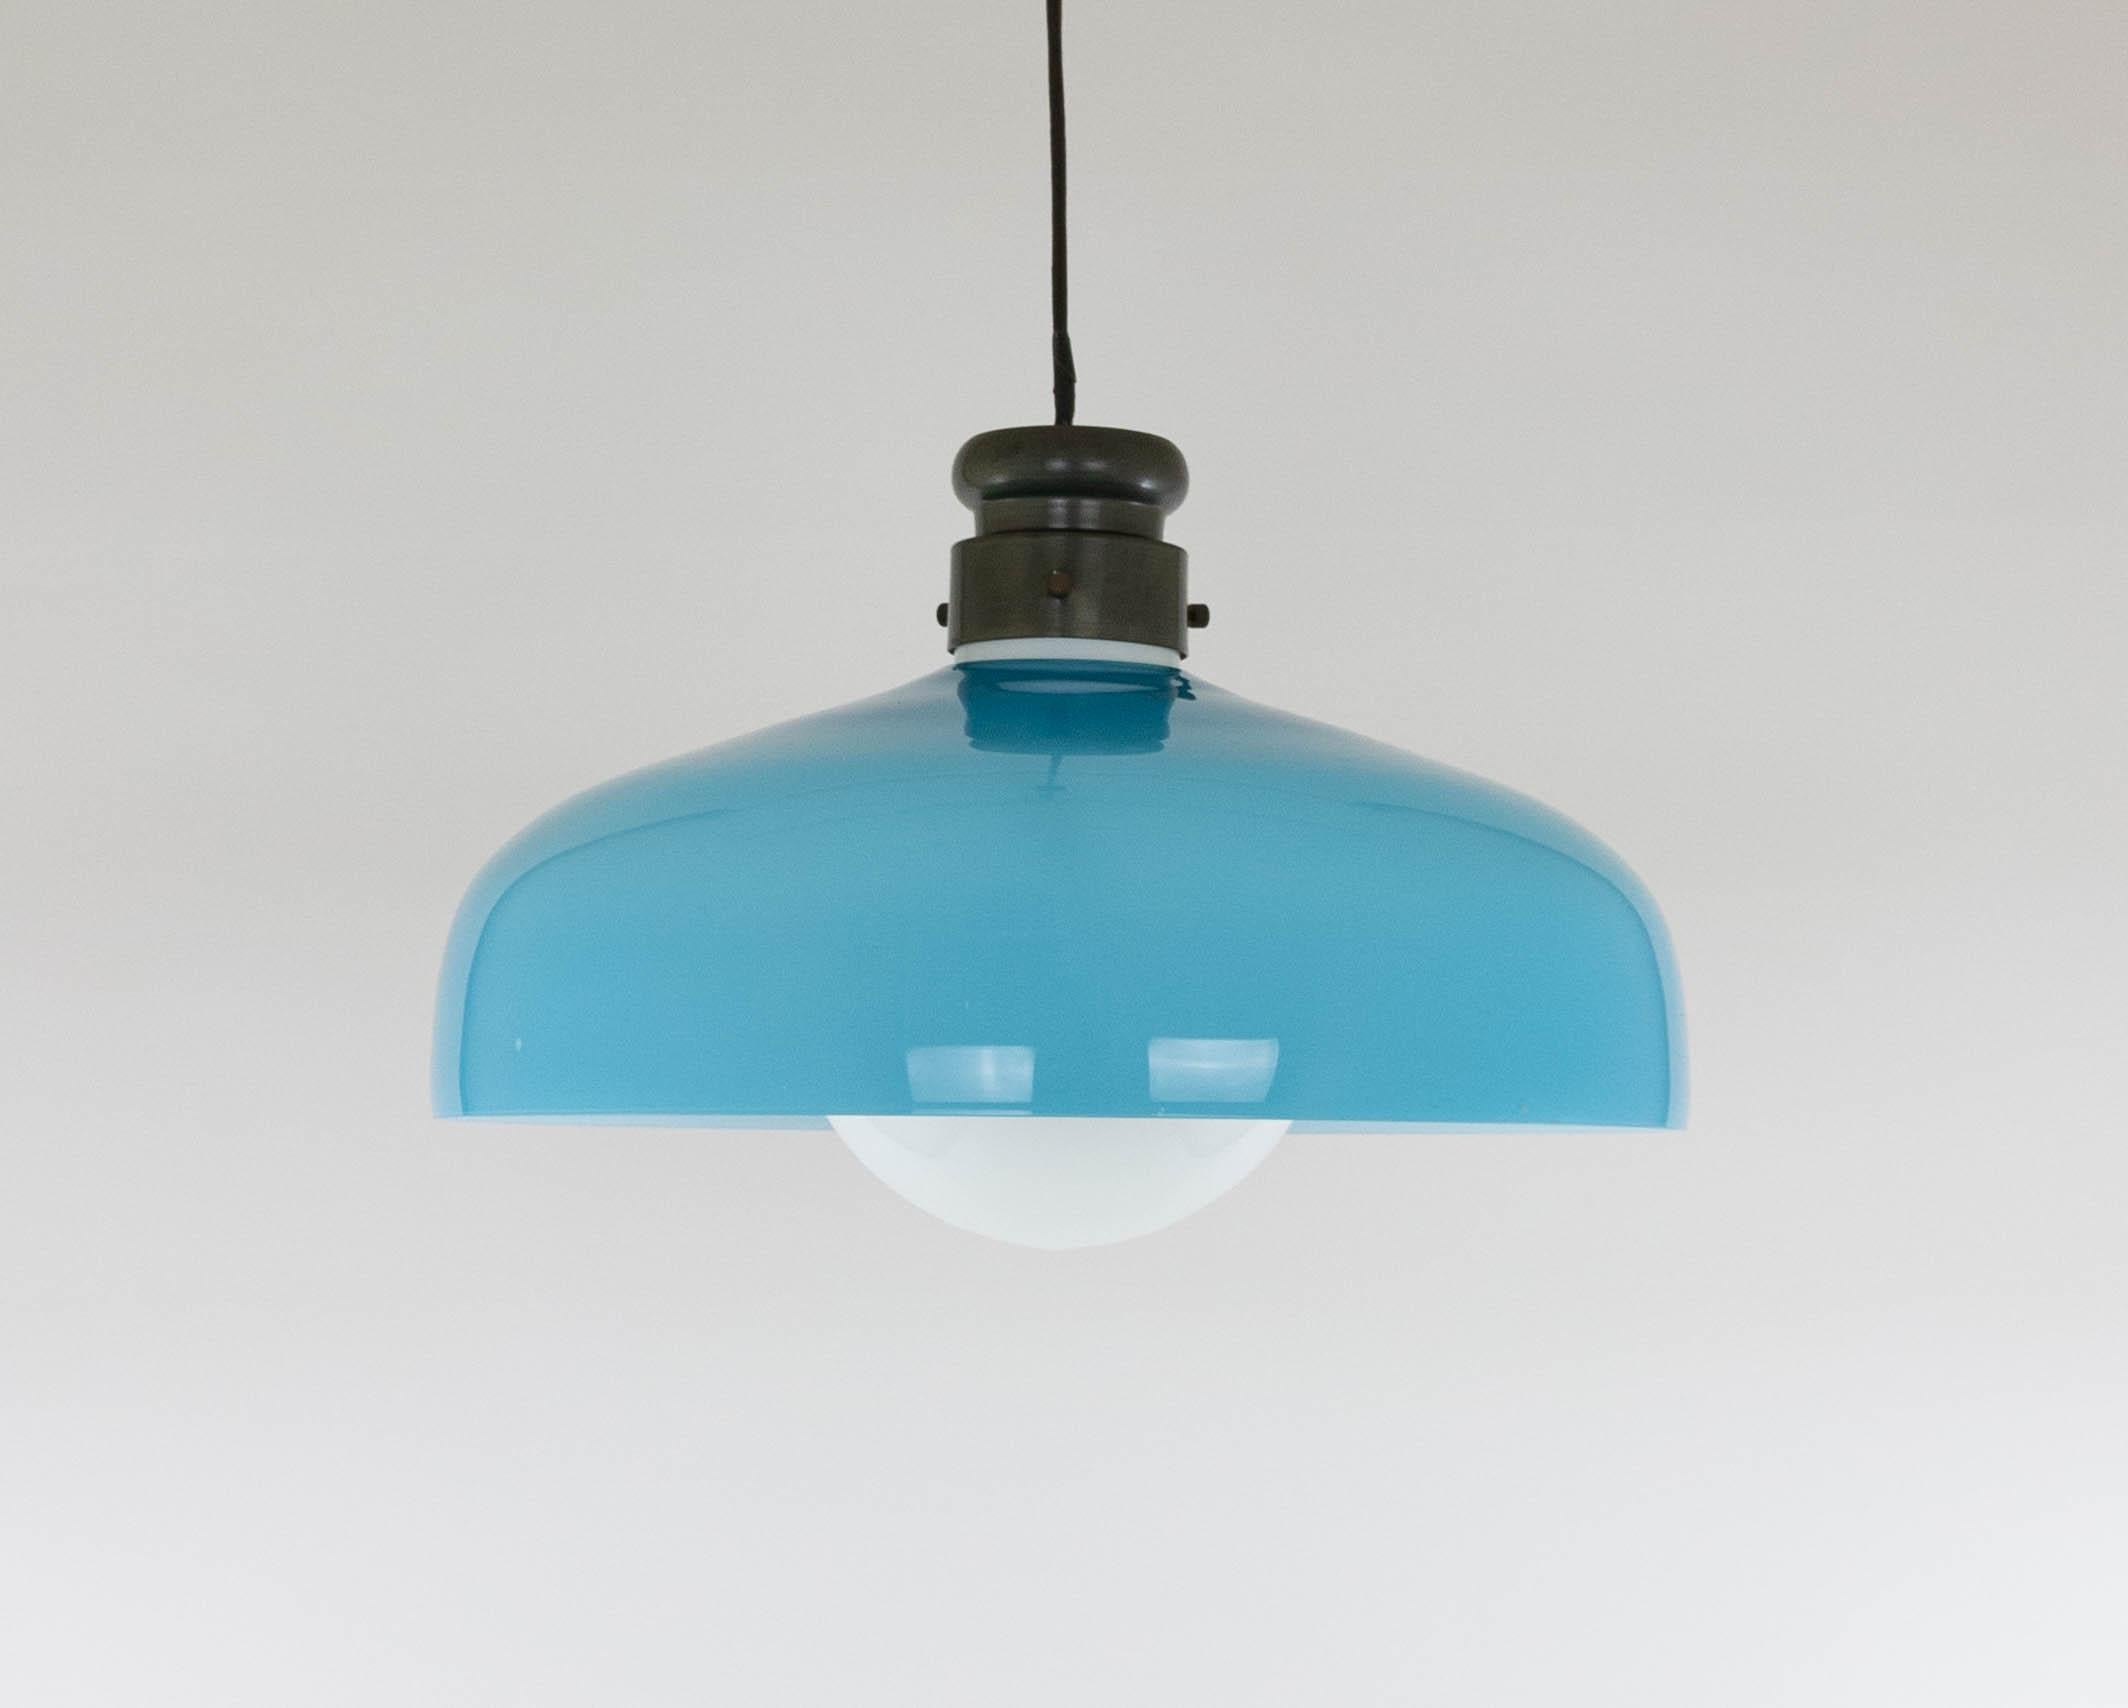 Große Glaspendelleuchte Modell L 72, entworfen in den 1960er Jahren von Alessandro Pianon für Vetreria Vistosi in Murano.

Die Lampe ist in einem sehr guten Vintage-Zustand und wird mit dem originalen Metall-Deckensockel geliefert. 